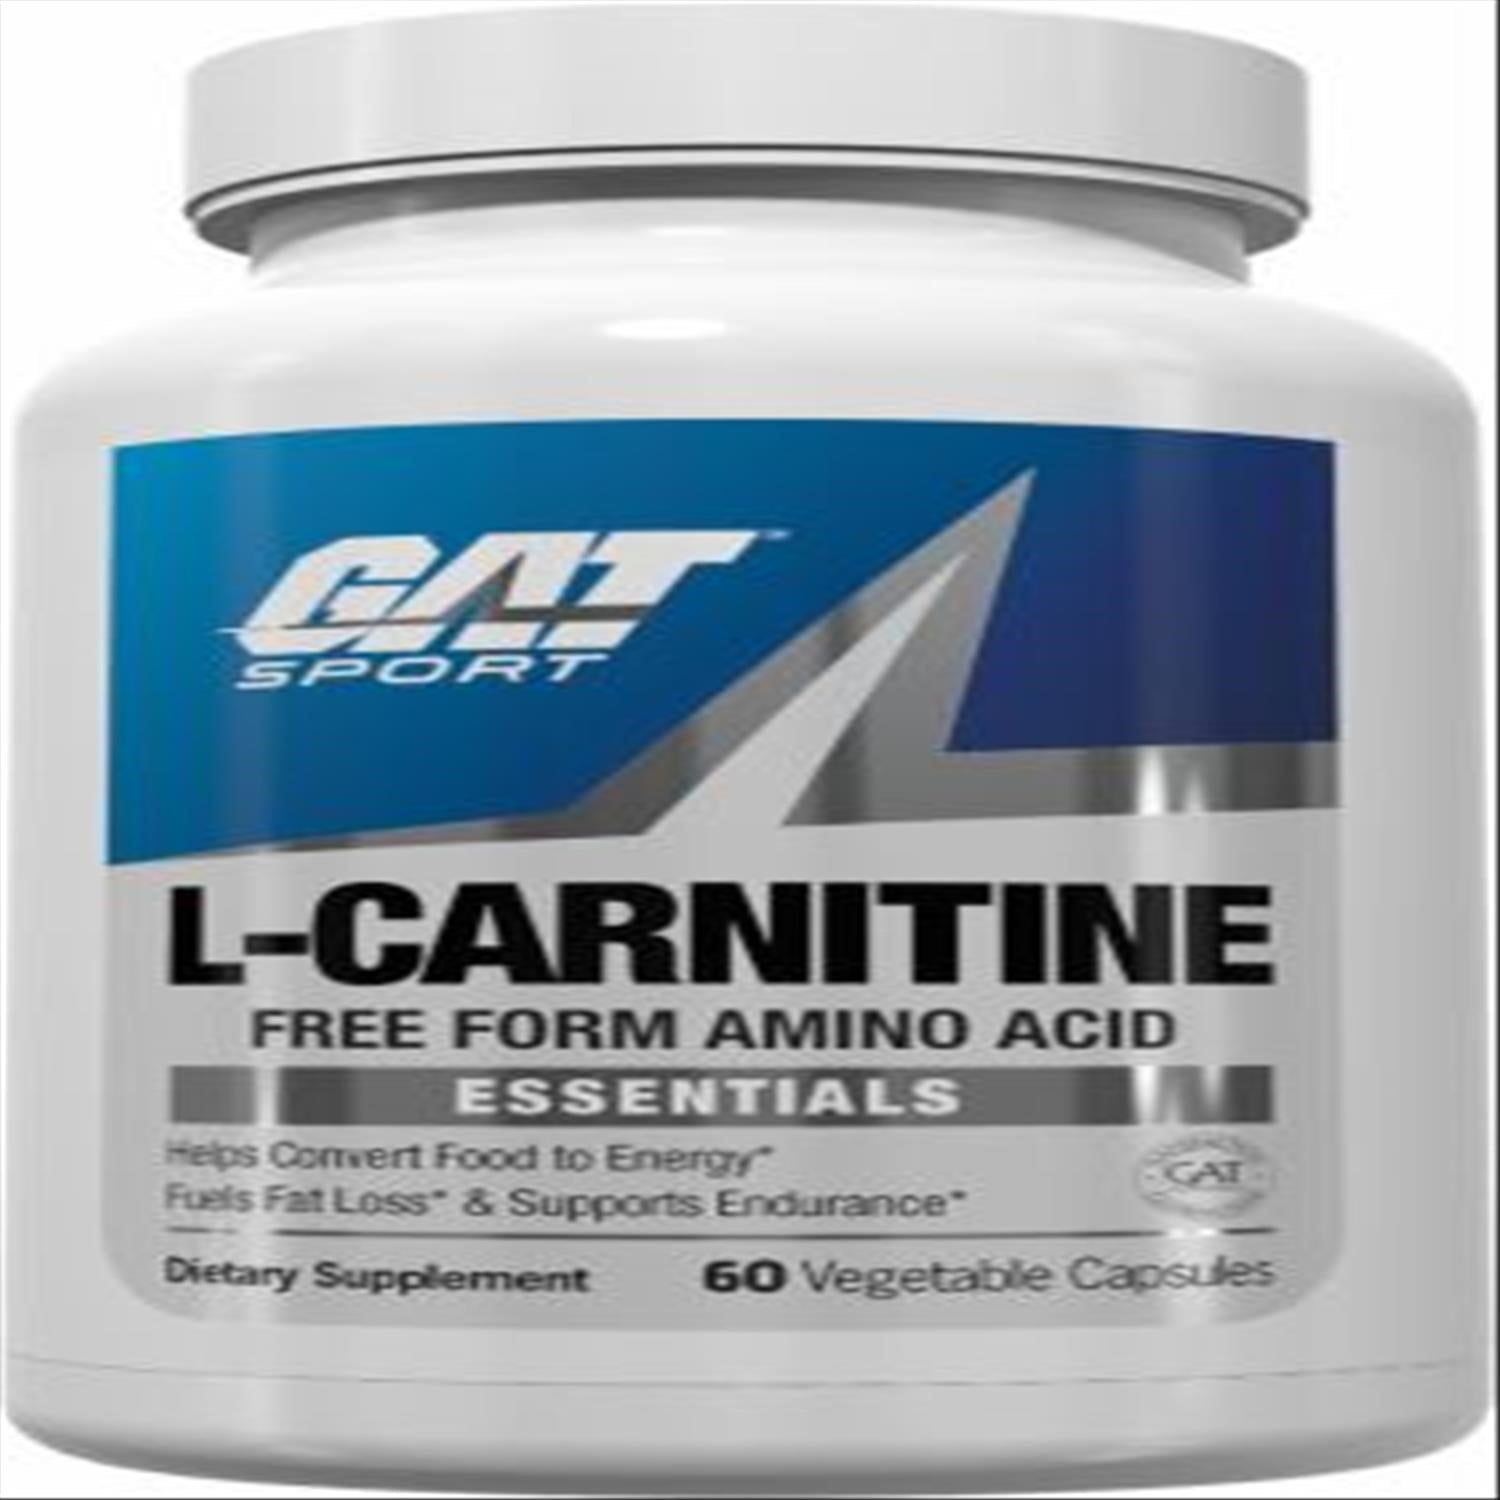 GAT Sport L-Carnitine Capsules, 60 Ct